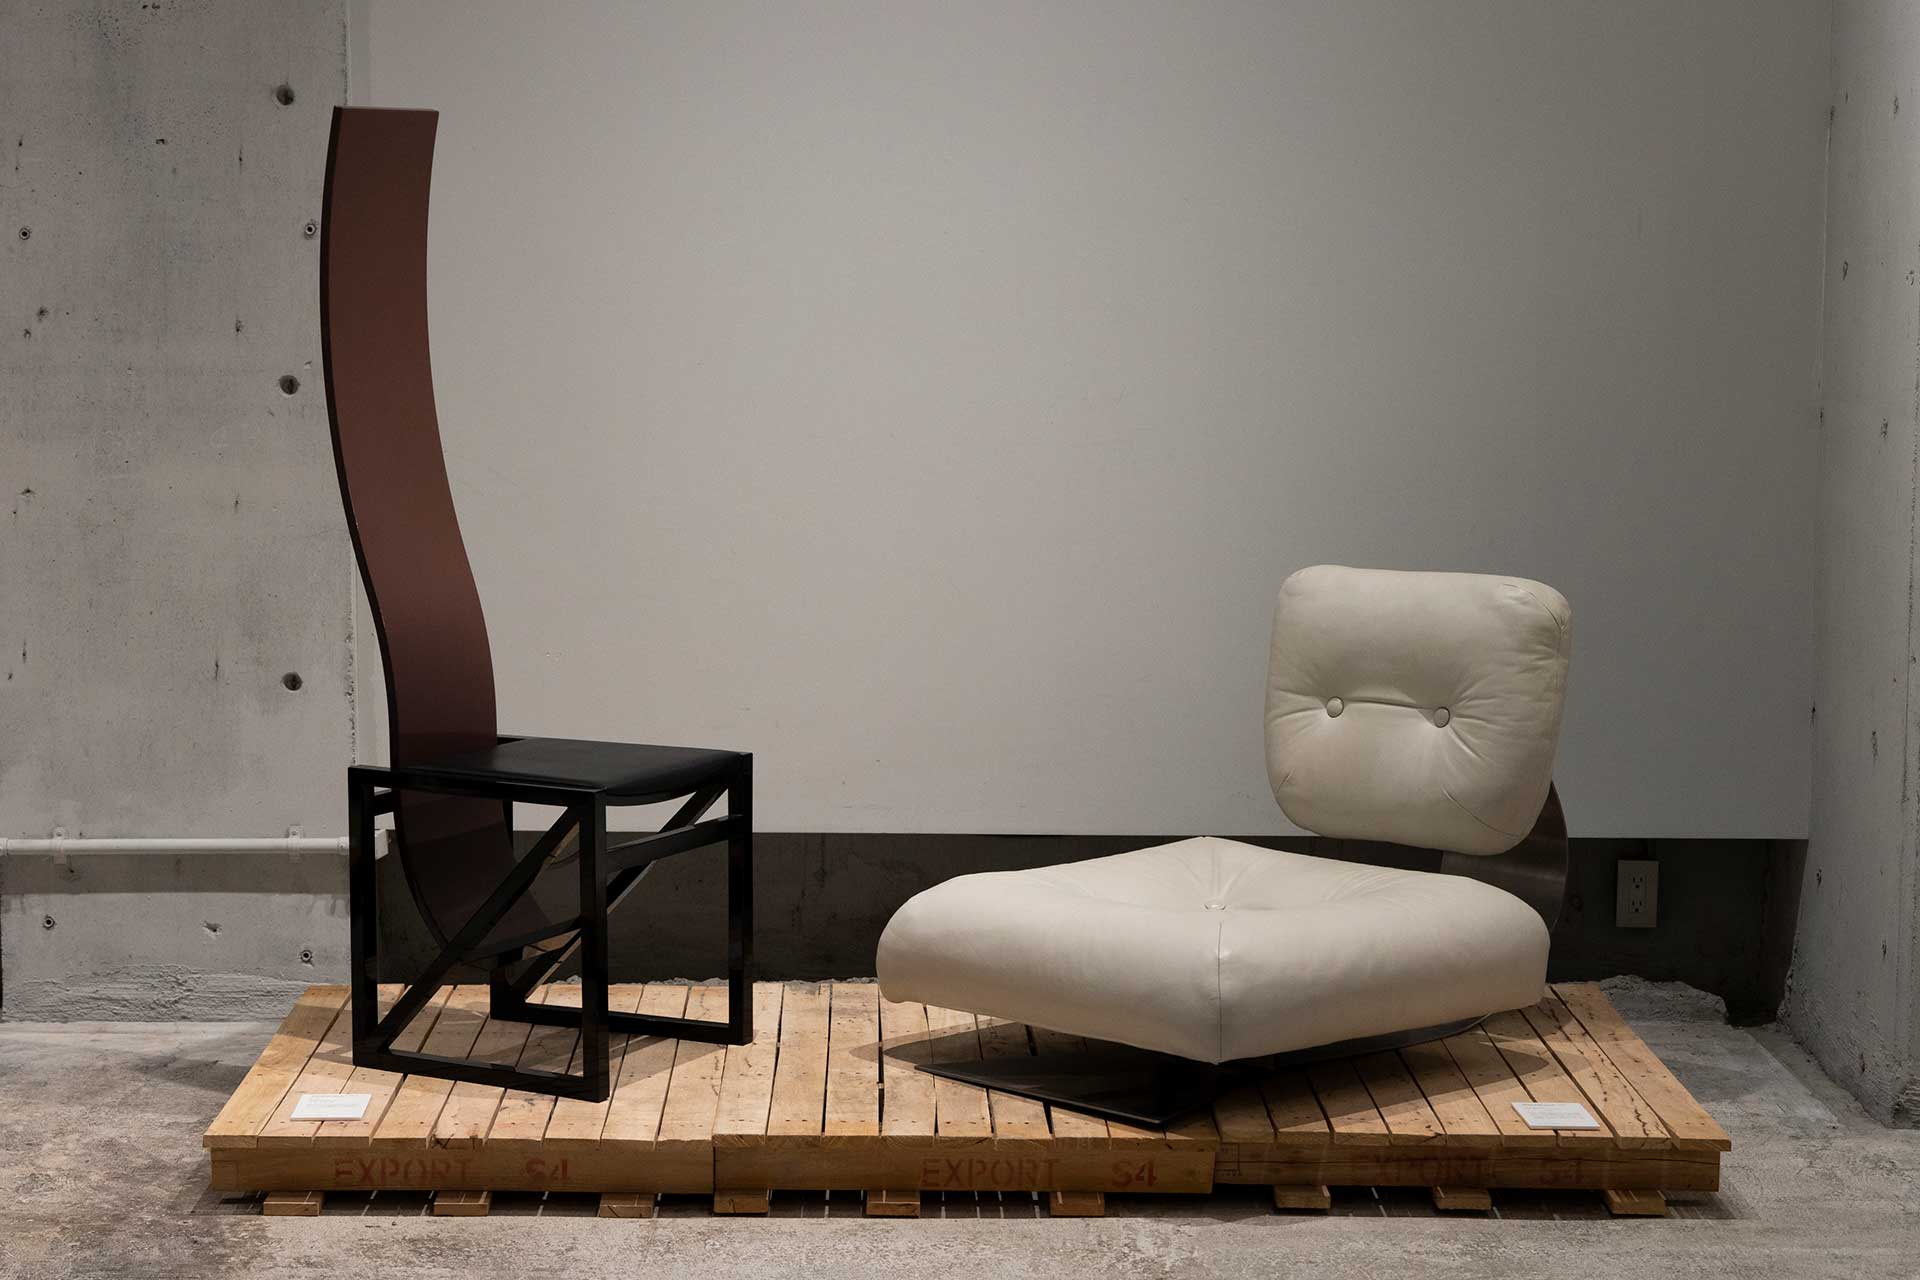 左は黒川紀章による“EDO series High Back Chair”の中の一脚。伝統的な黒塗りにより、シンプルな日本の伝統美と江戸文化を現代に表現。右はブラジル人建築家、オスカー・ニーマイヤーによる“White “Alta”Lounge Chair”。フレームにはスチールが使用されている。